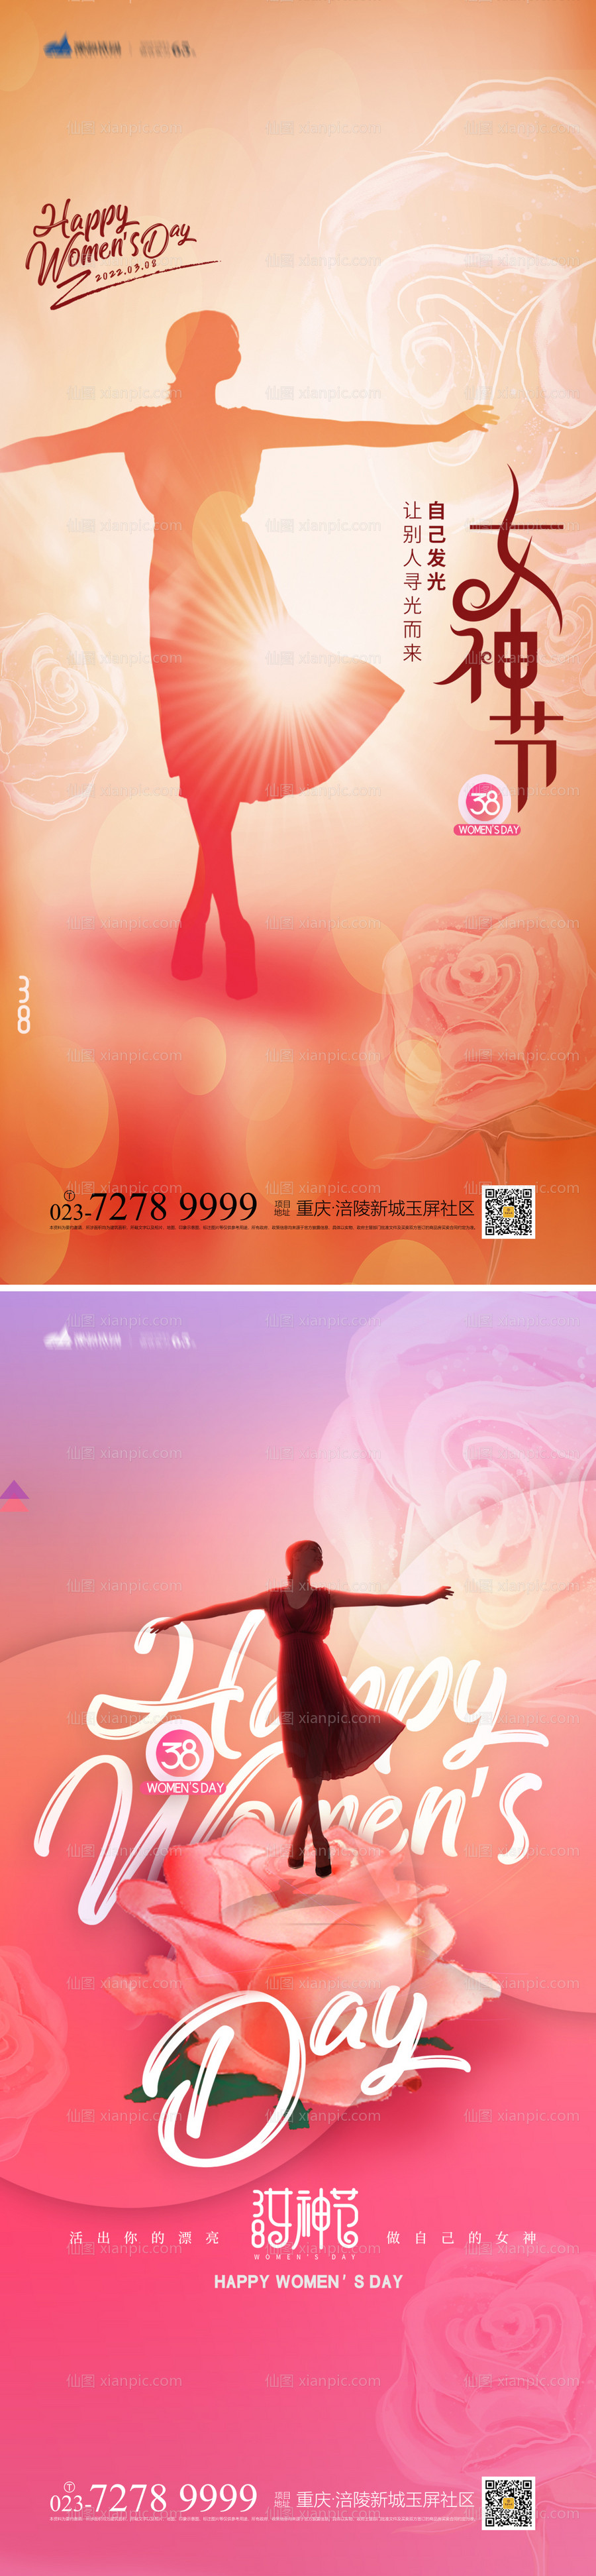 素材乐-38女神节系列海报